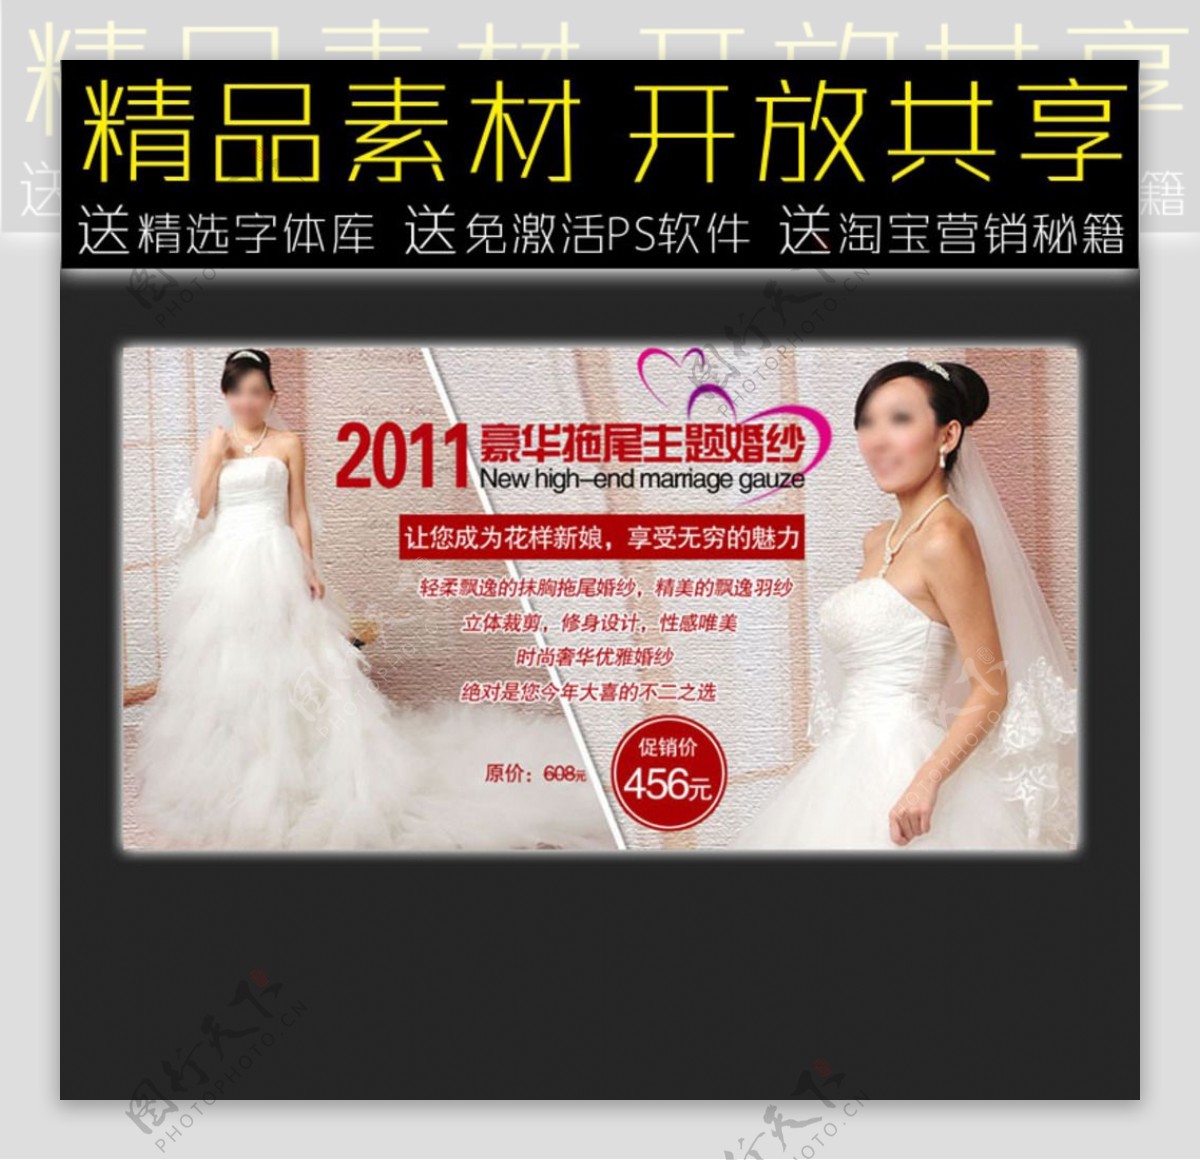 婚纱网店促销广告模板图片